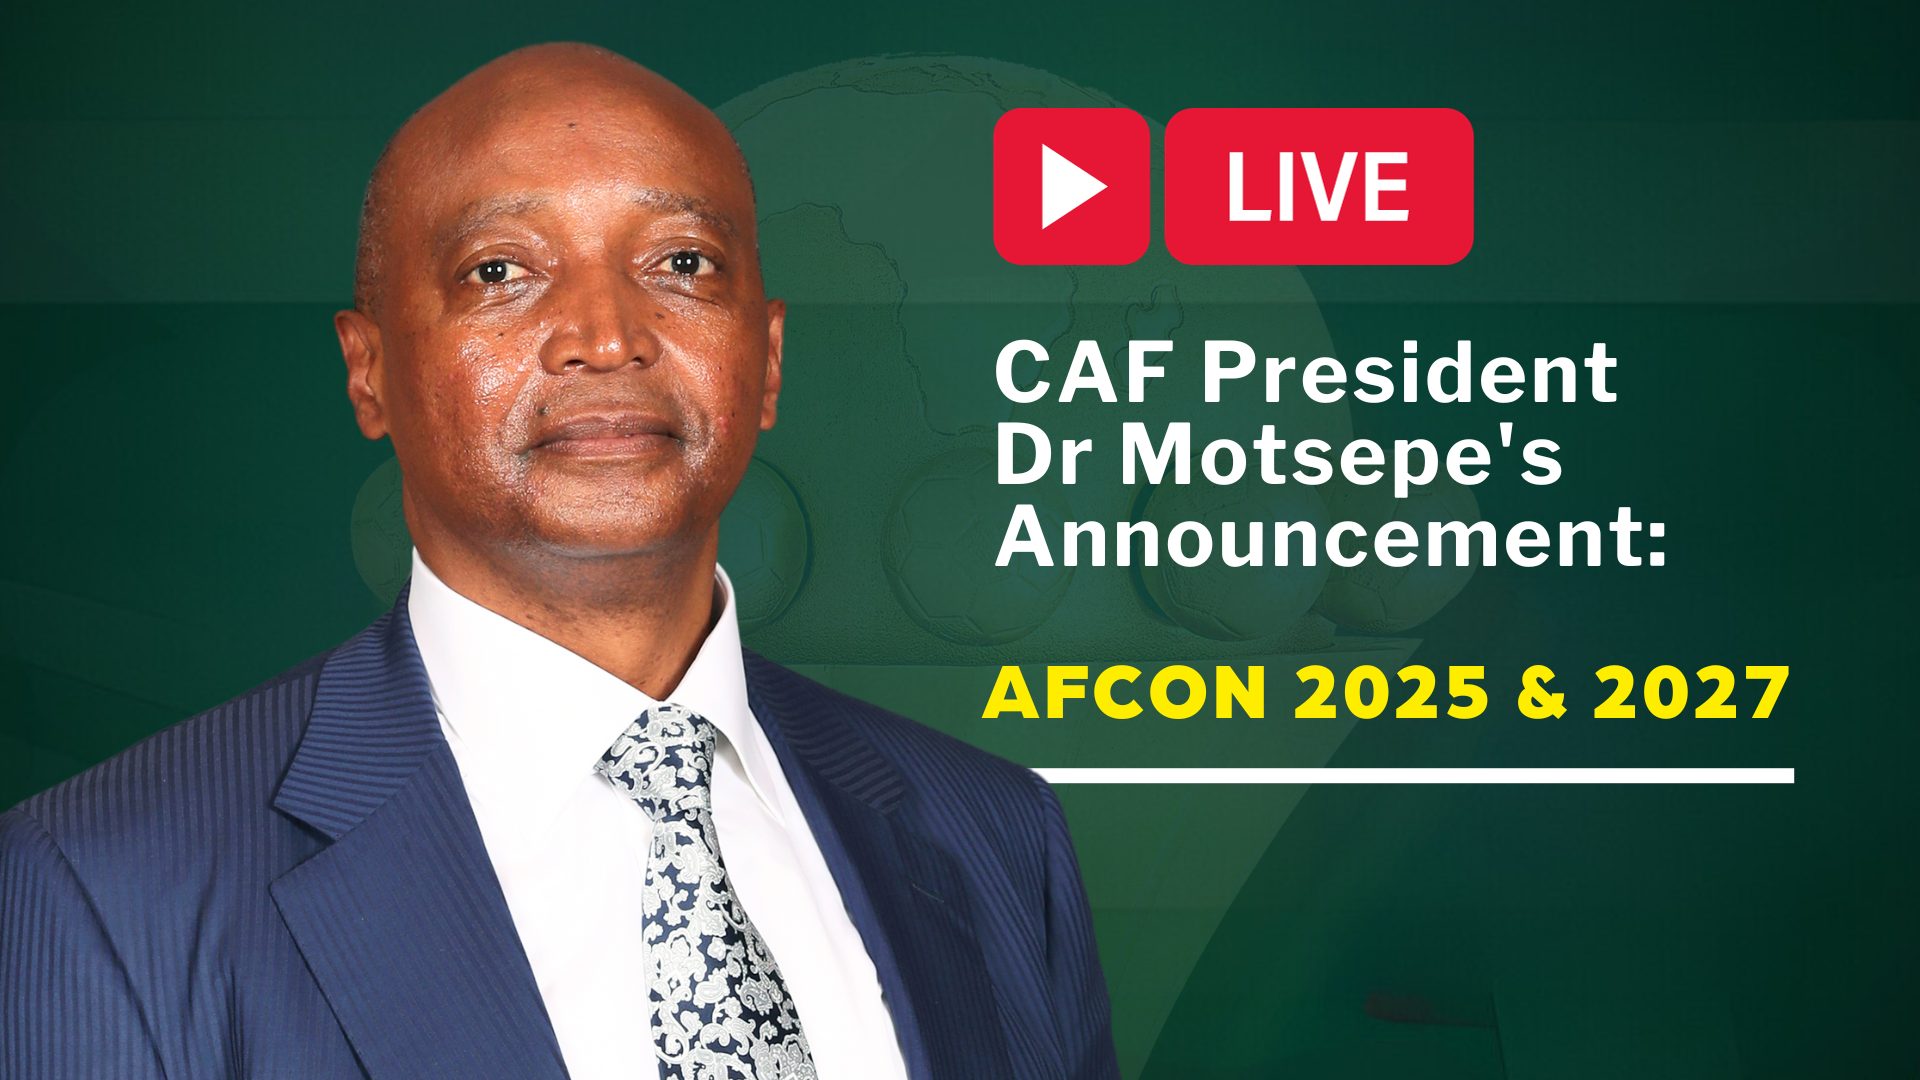 Vivez en direct l’annonce du Président de la CAF, Dr Motsepe, relative aux CAN 2025 et 2027 